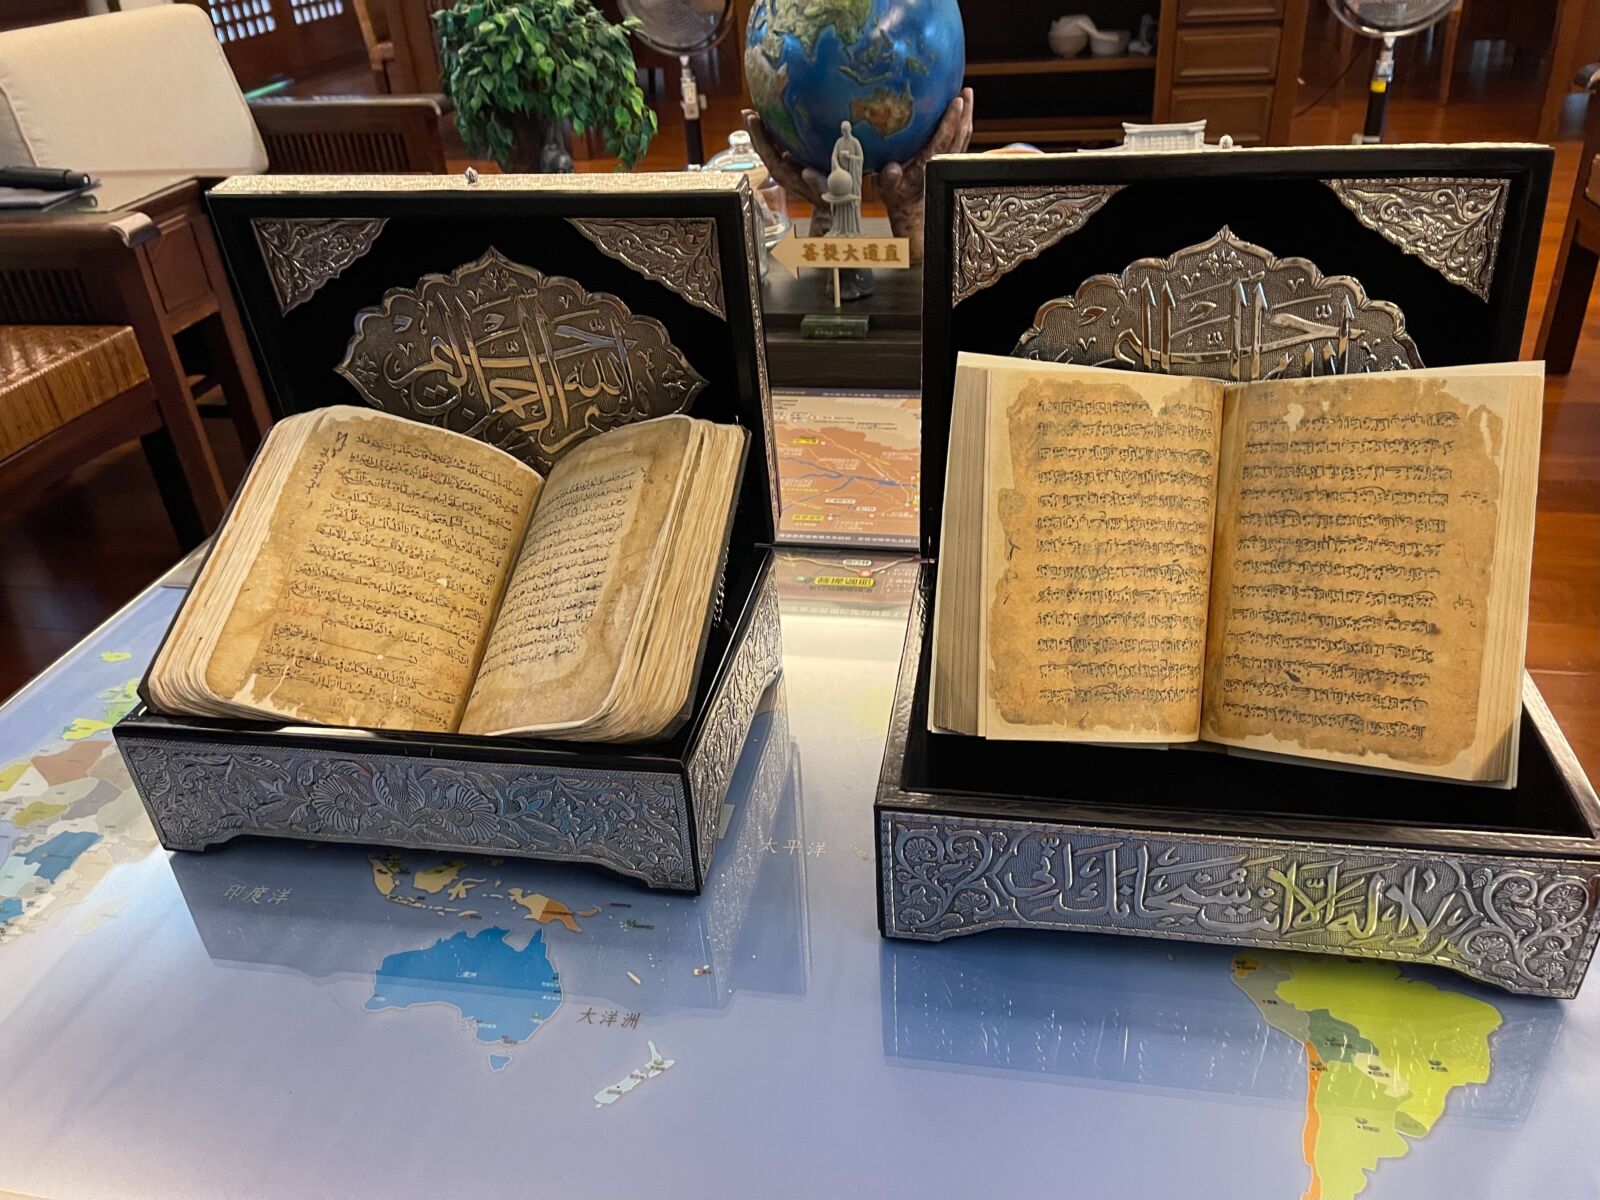 500年歷史手抄《古蘭經》 古籍修復3年送回靜思精舍